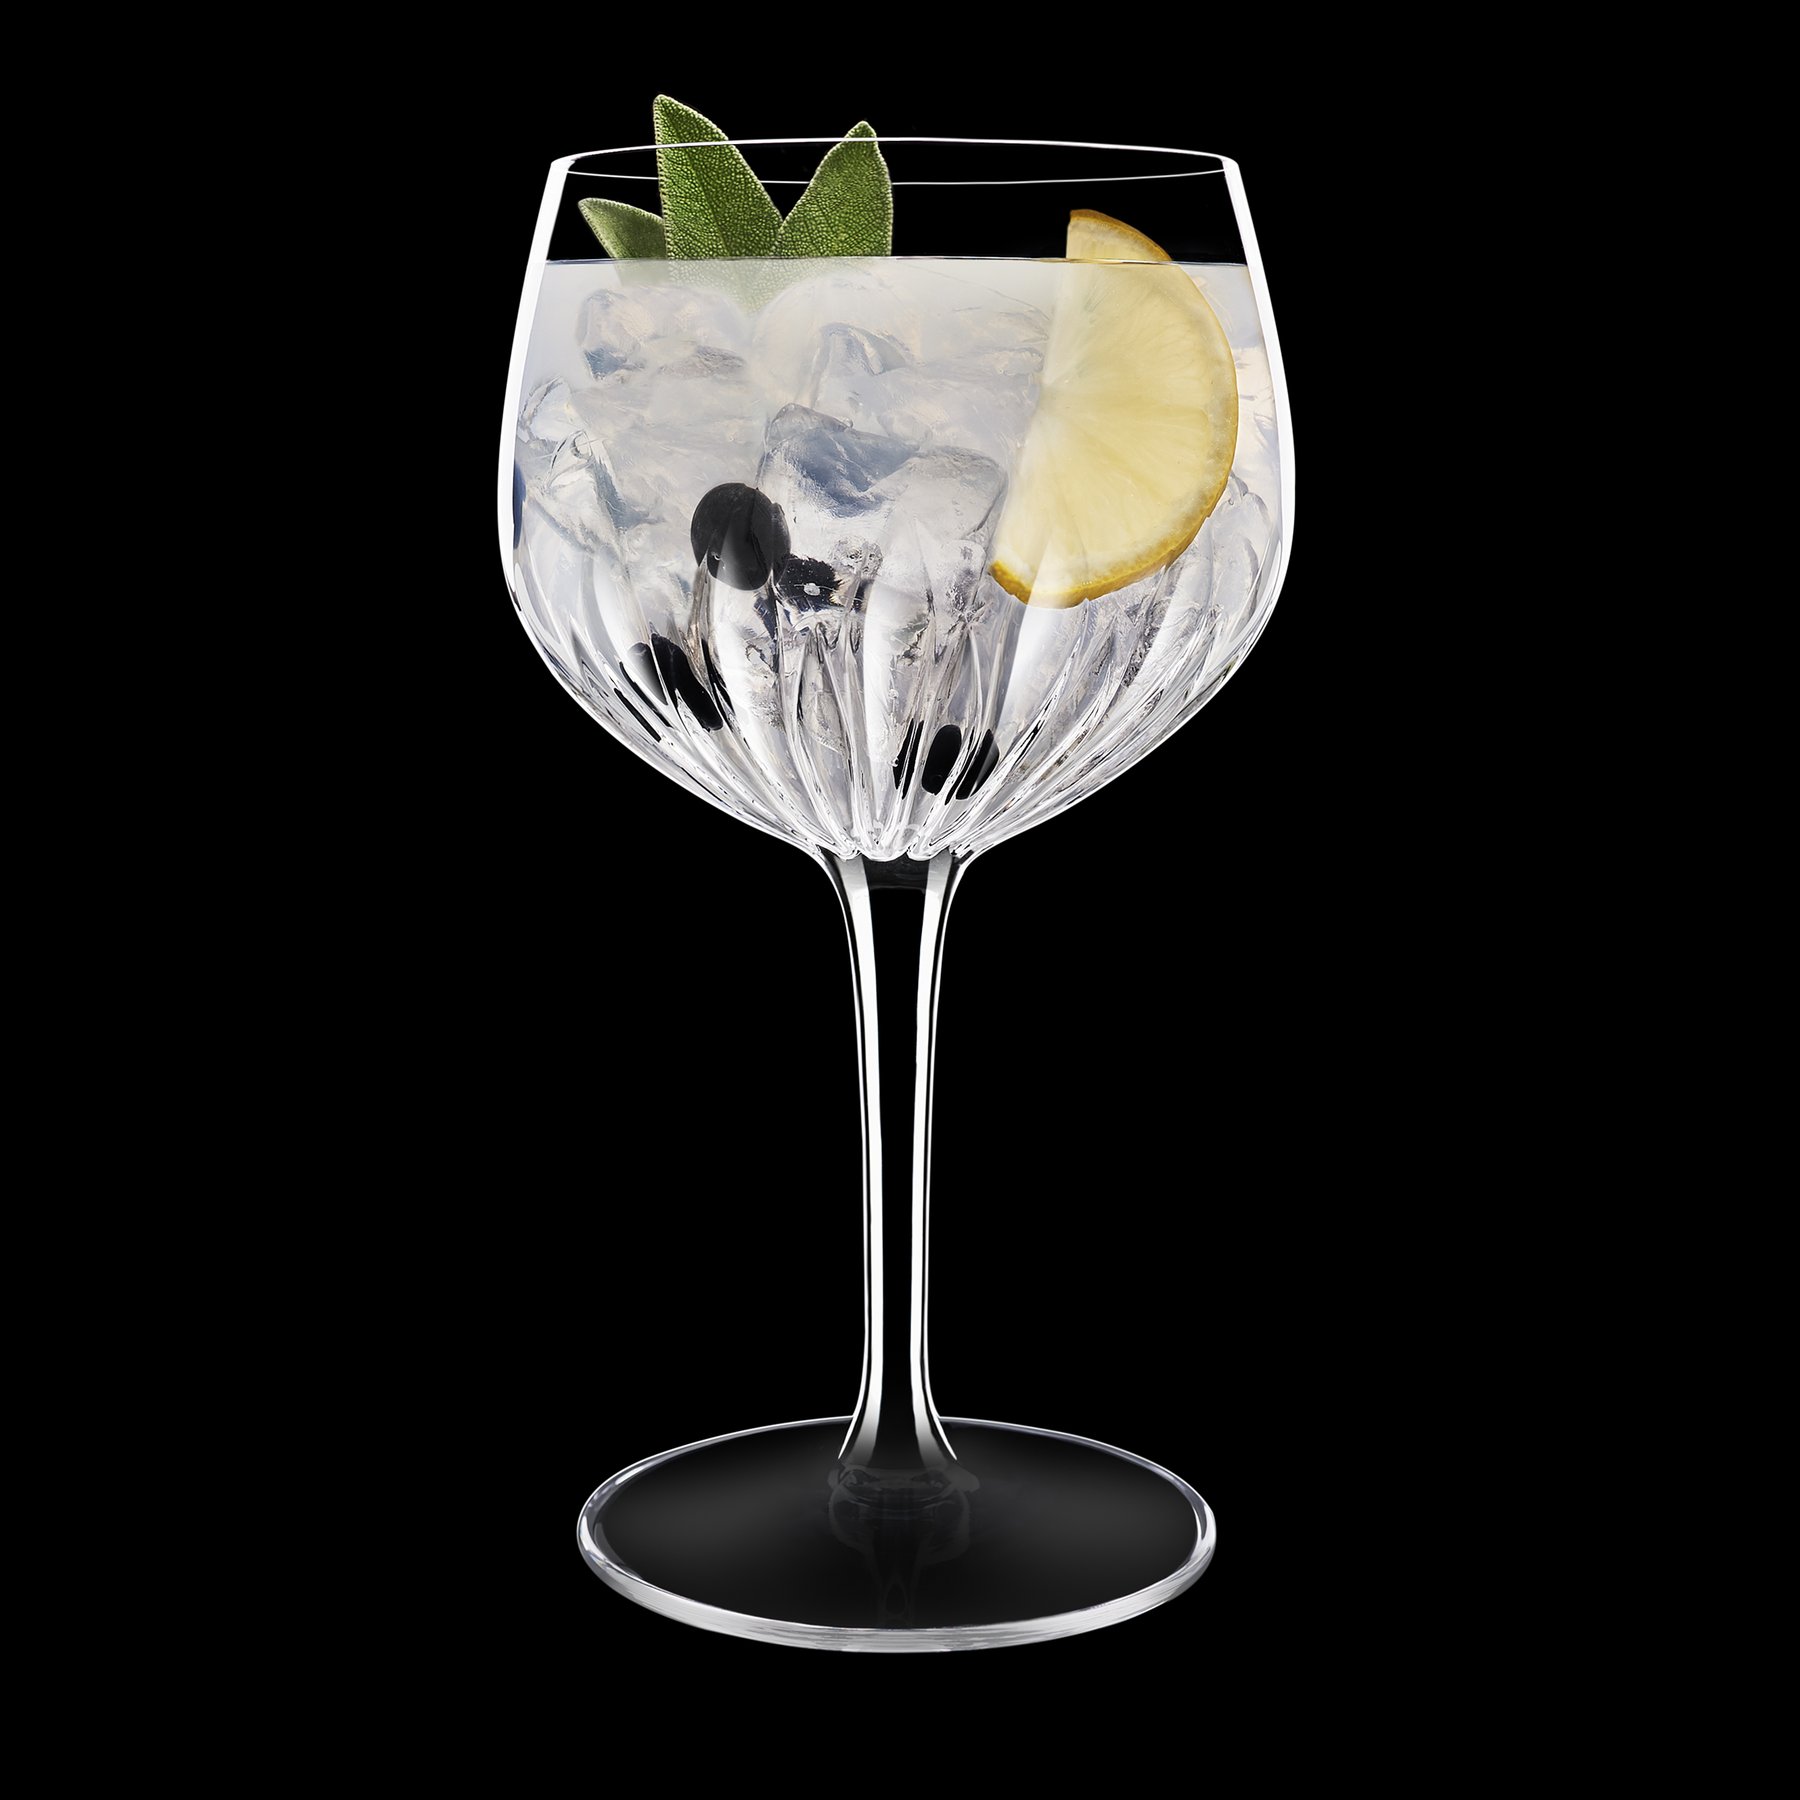 Mixology Spanish Gin & Tonic Glas 800 ml, gefüllt mit Gin, Eis, Wacholderbeere, Zitronenscheibe, dunkler HIntergrund